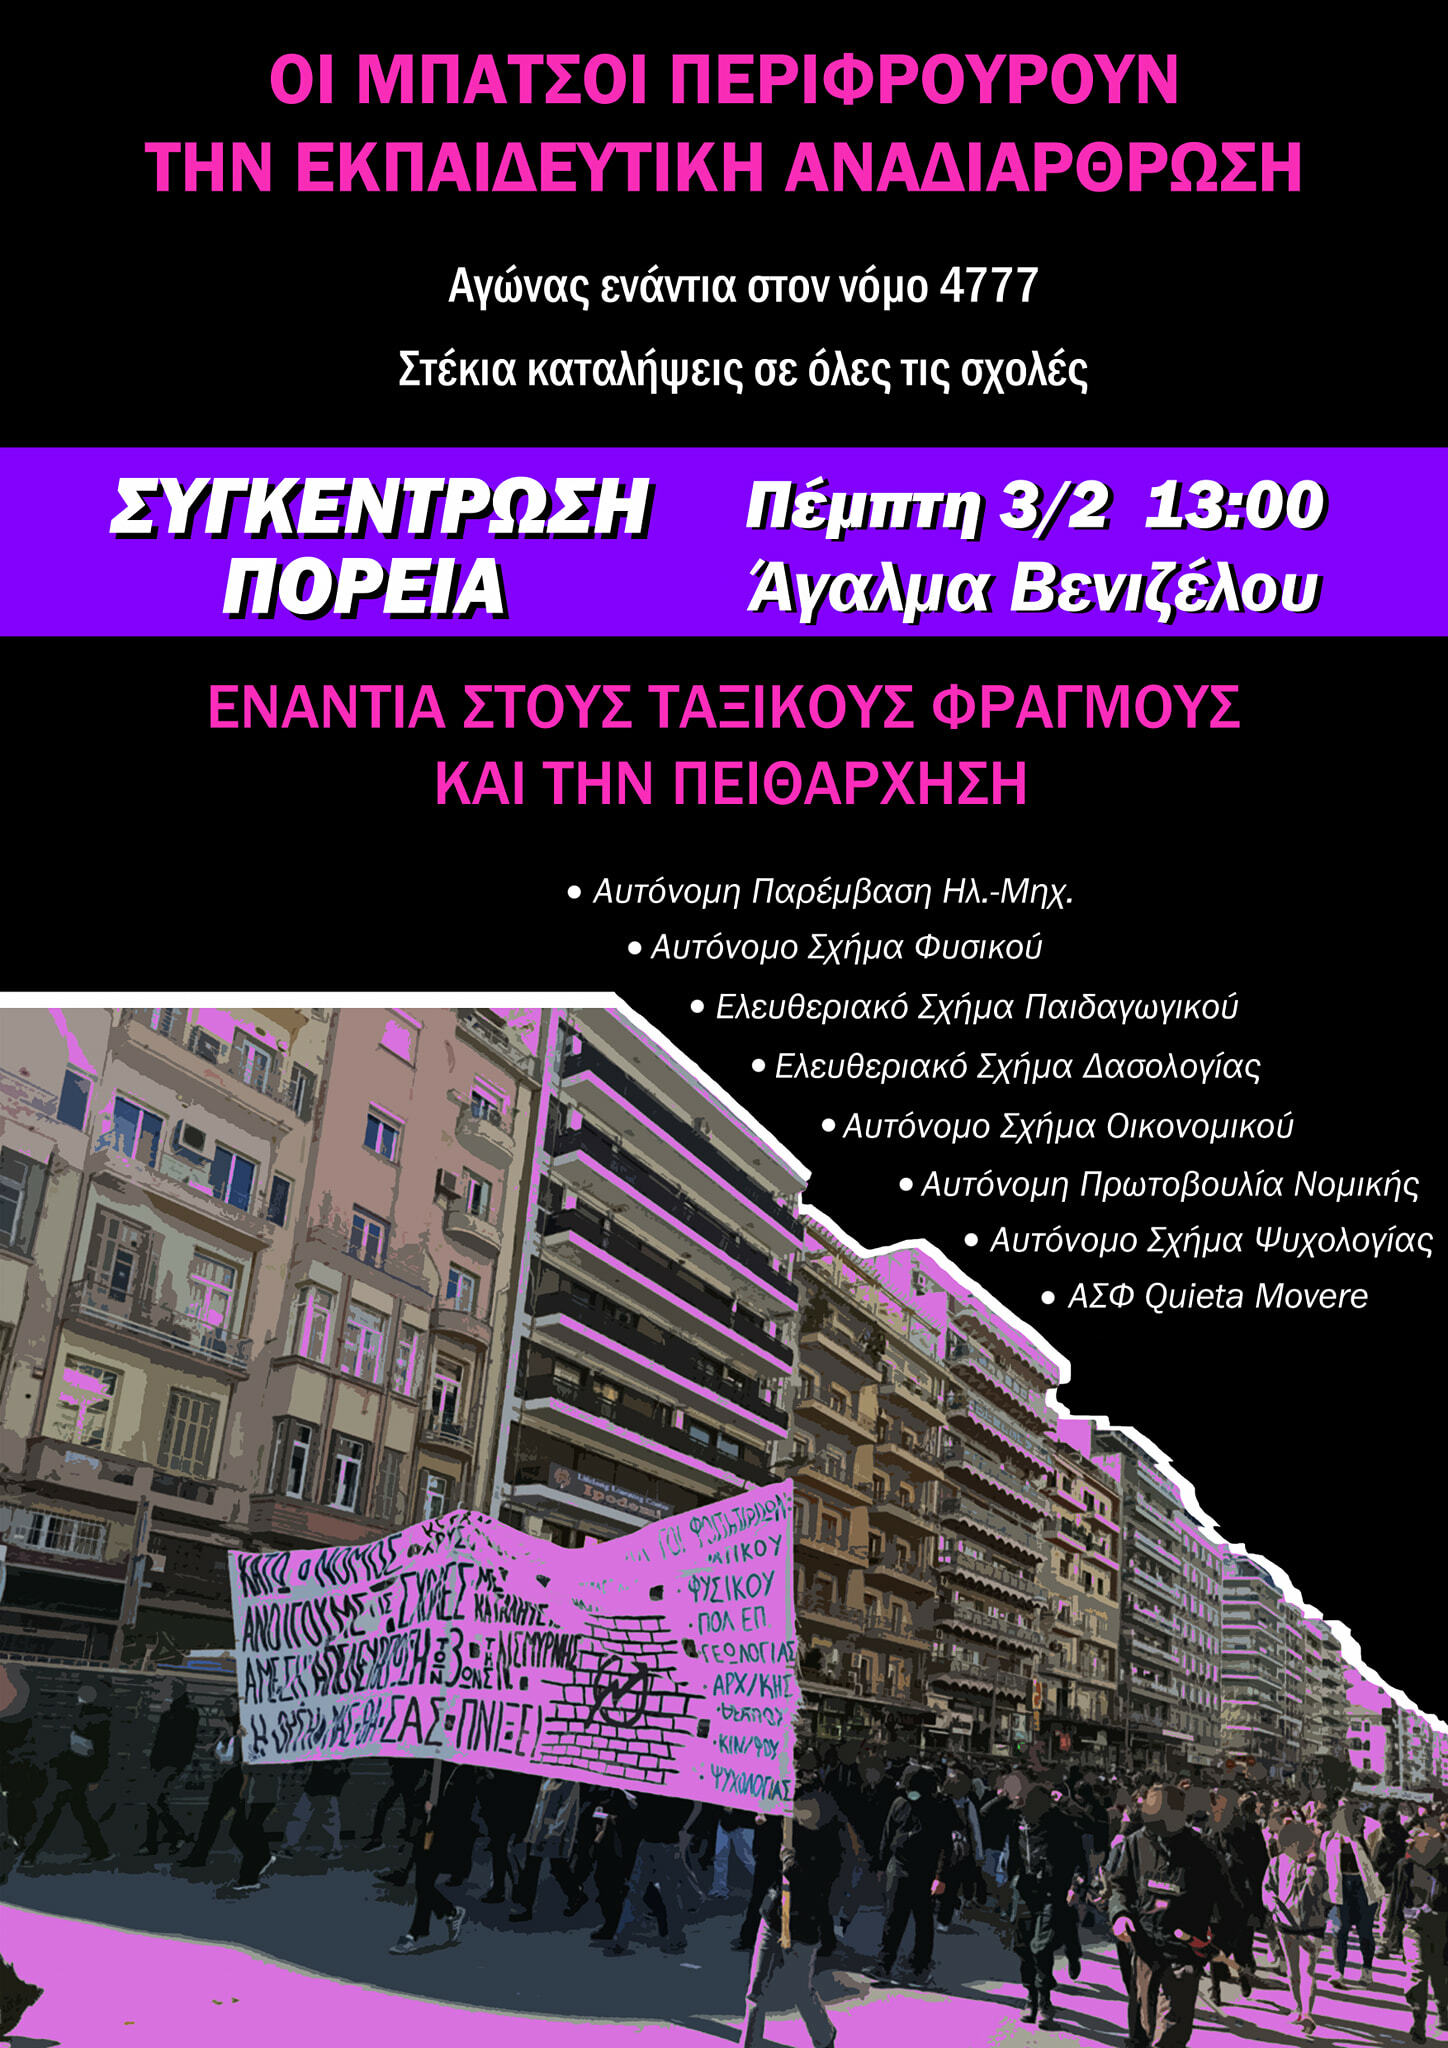 Θεσσαλονίκη | Πορεία ενάντια στην εκπαιδευτική αναδιάρθρωση (Πέμπτη 3/2, 13:00, Αγ. Βενιζέλου)